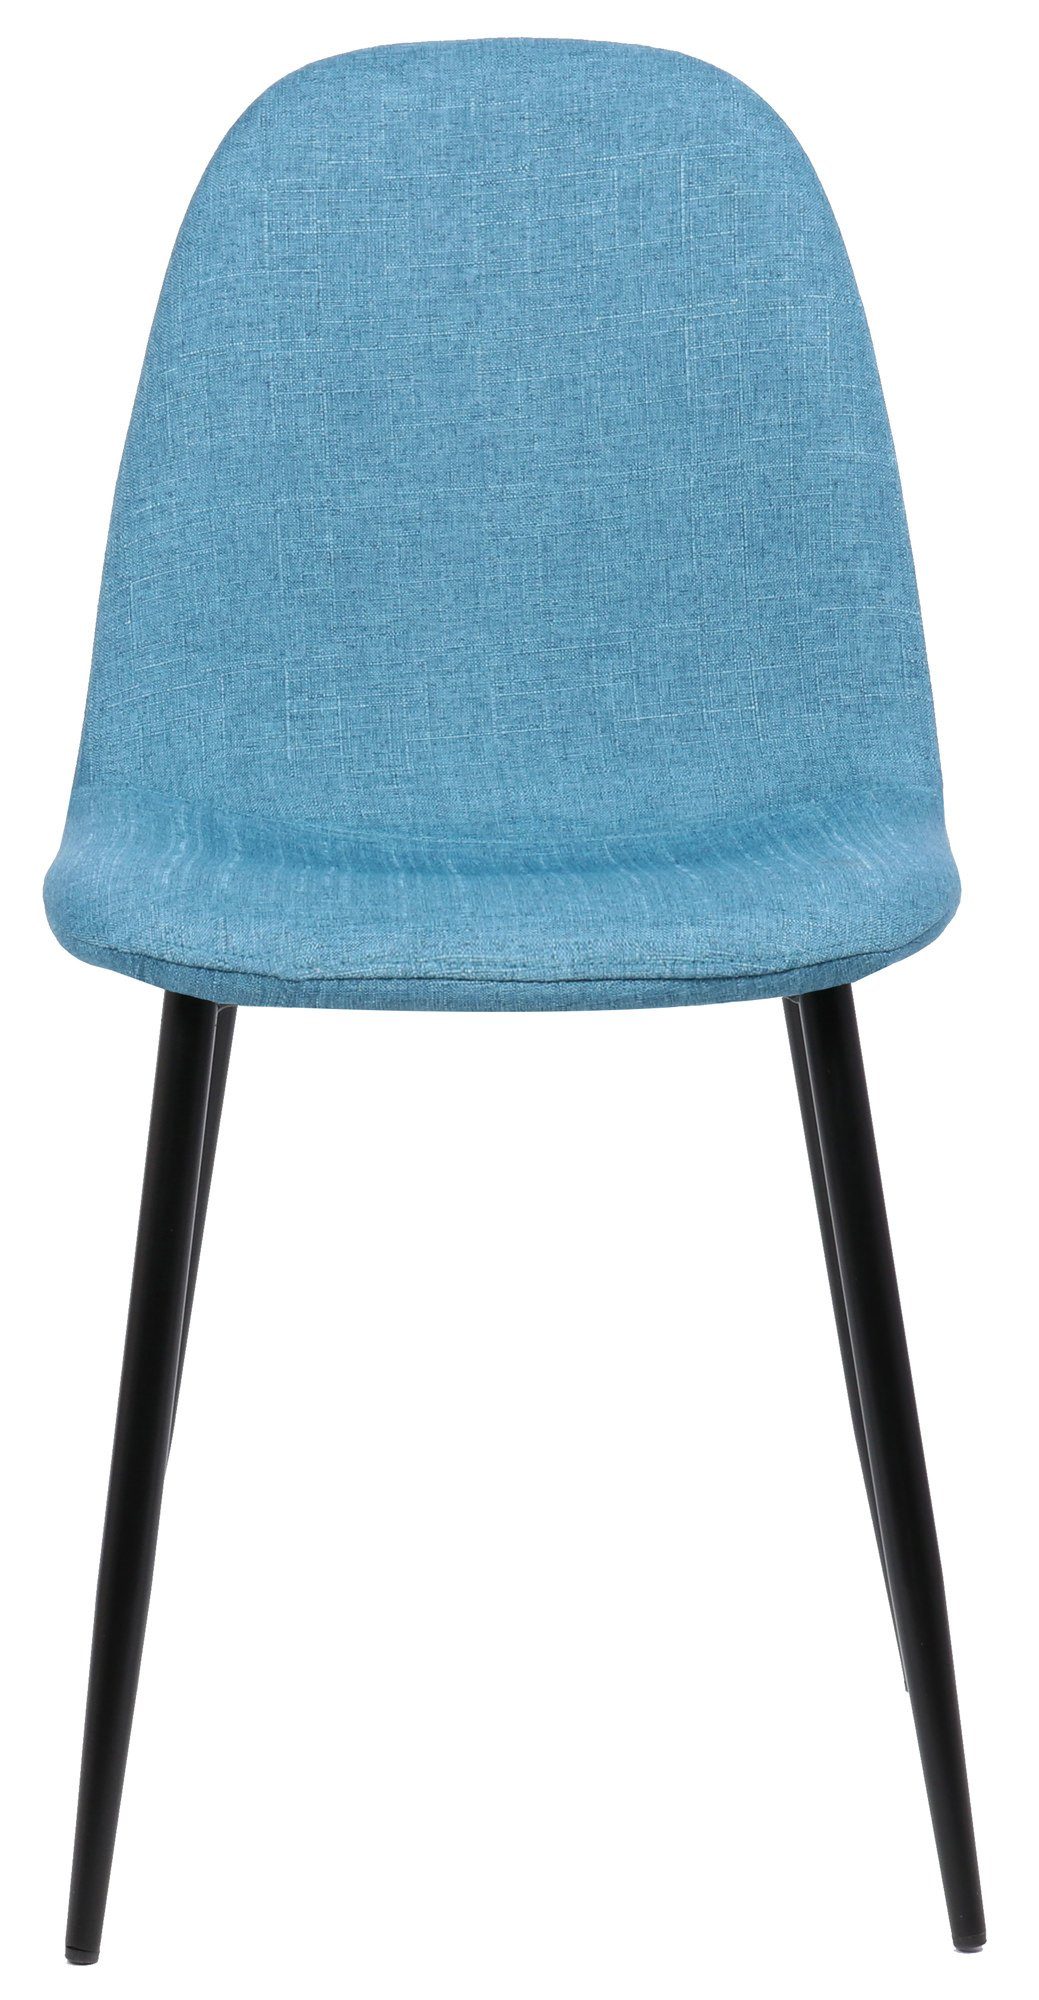 - - - blau Stoff Gestell: Sitzfläche: Metall TPFLiving Esszimmerstuhl mit Wohnzimmerstuhl Esstischstuhl hochwertig Sitzfläche Konferenzstuhl - (Küchenstuhl Naples Polsterstuhl), - schwarz gepolsterter